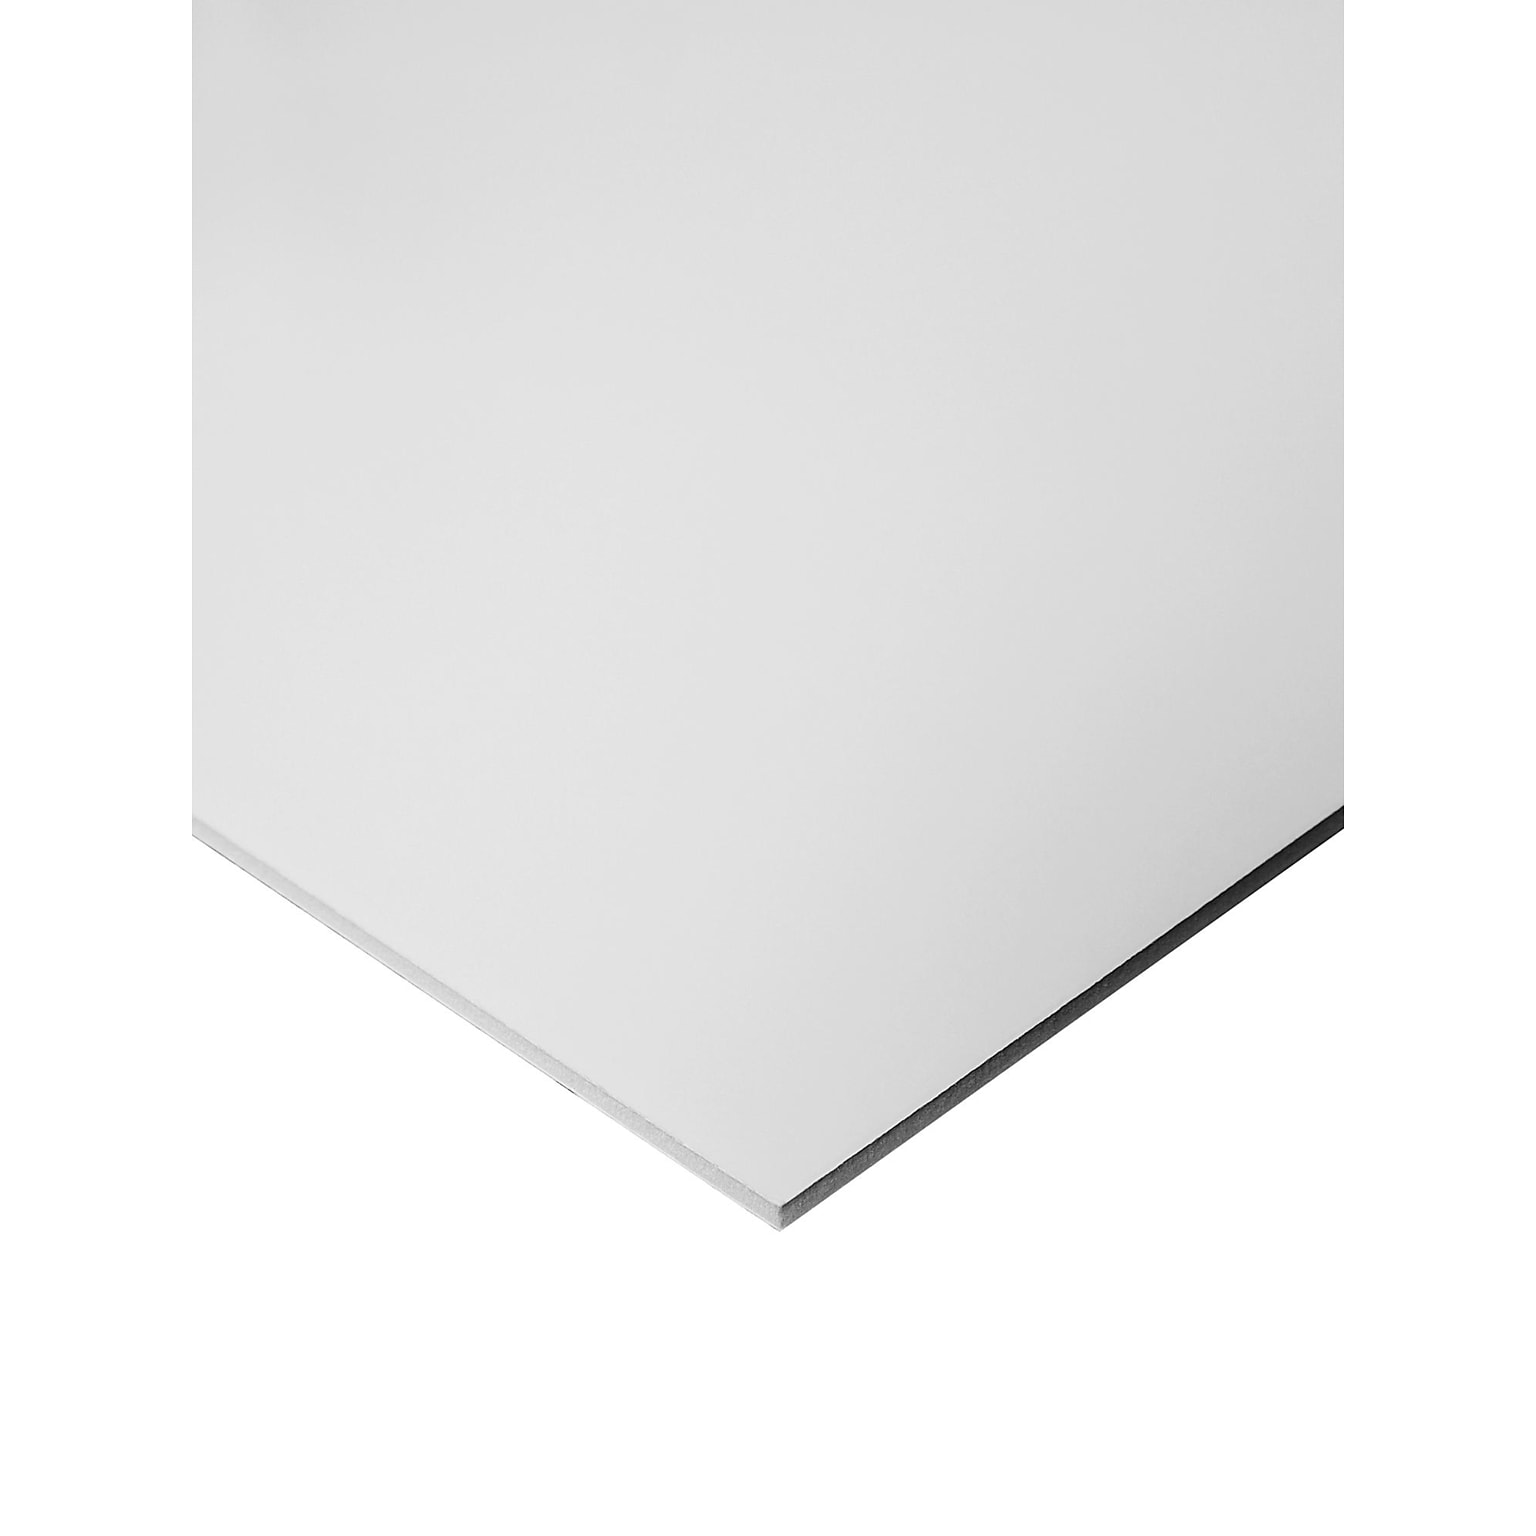 Crescent Heat Activated Fome-Cor Board, 3/16 x 24 x 36, White (11105-2436C)